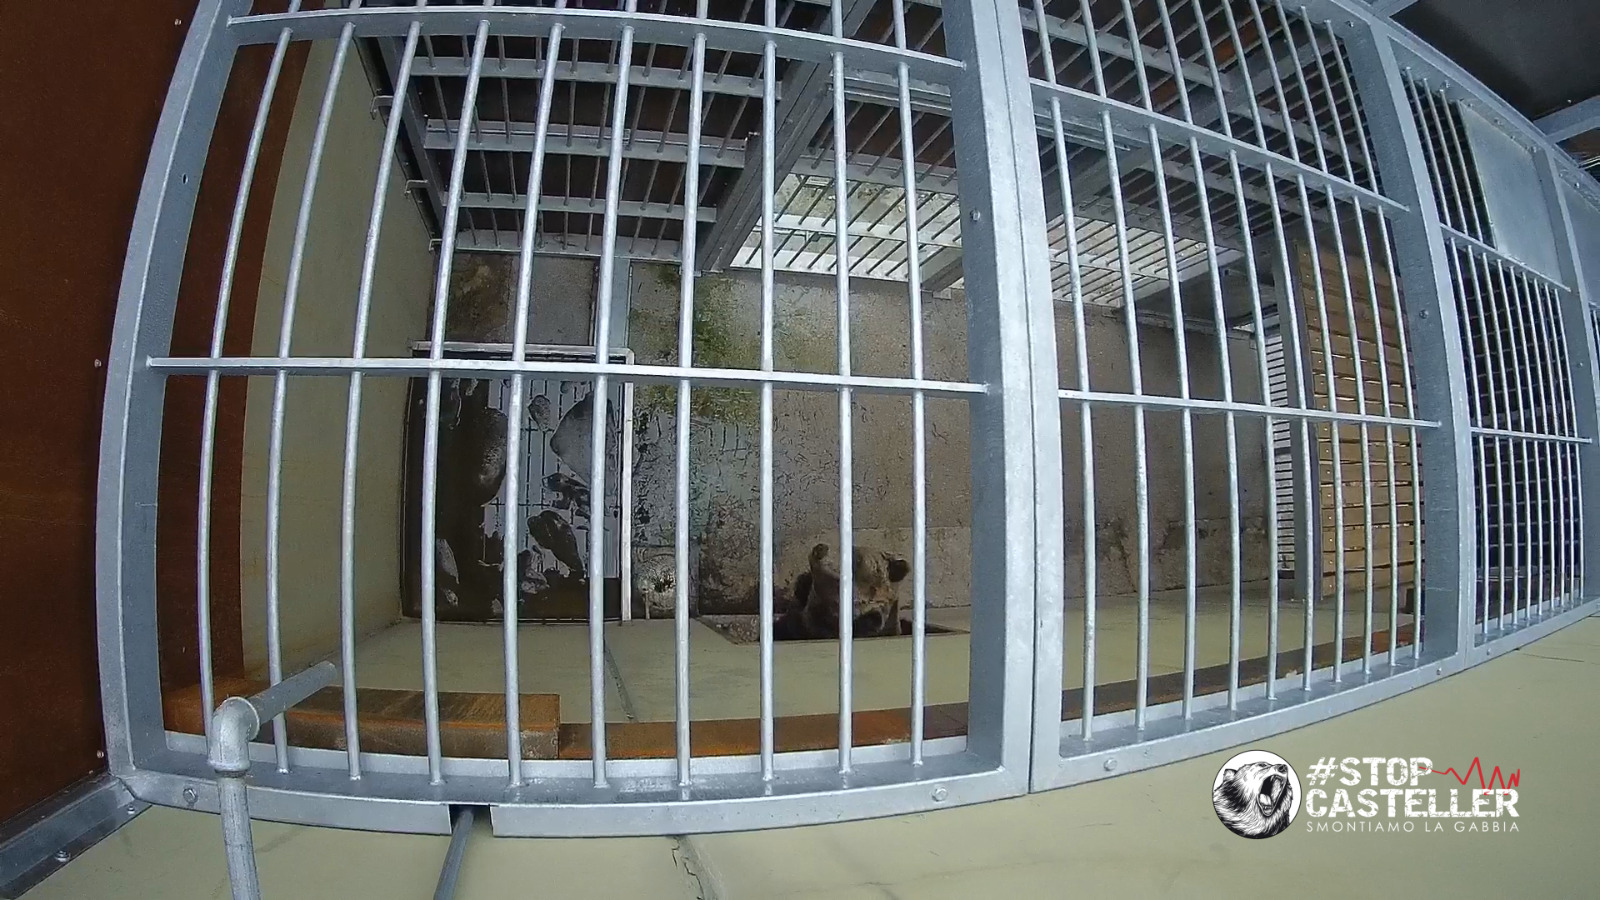 #stopcasteller – ecco le reali condizioni degli orsi detenuti